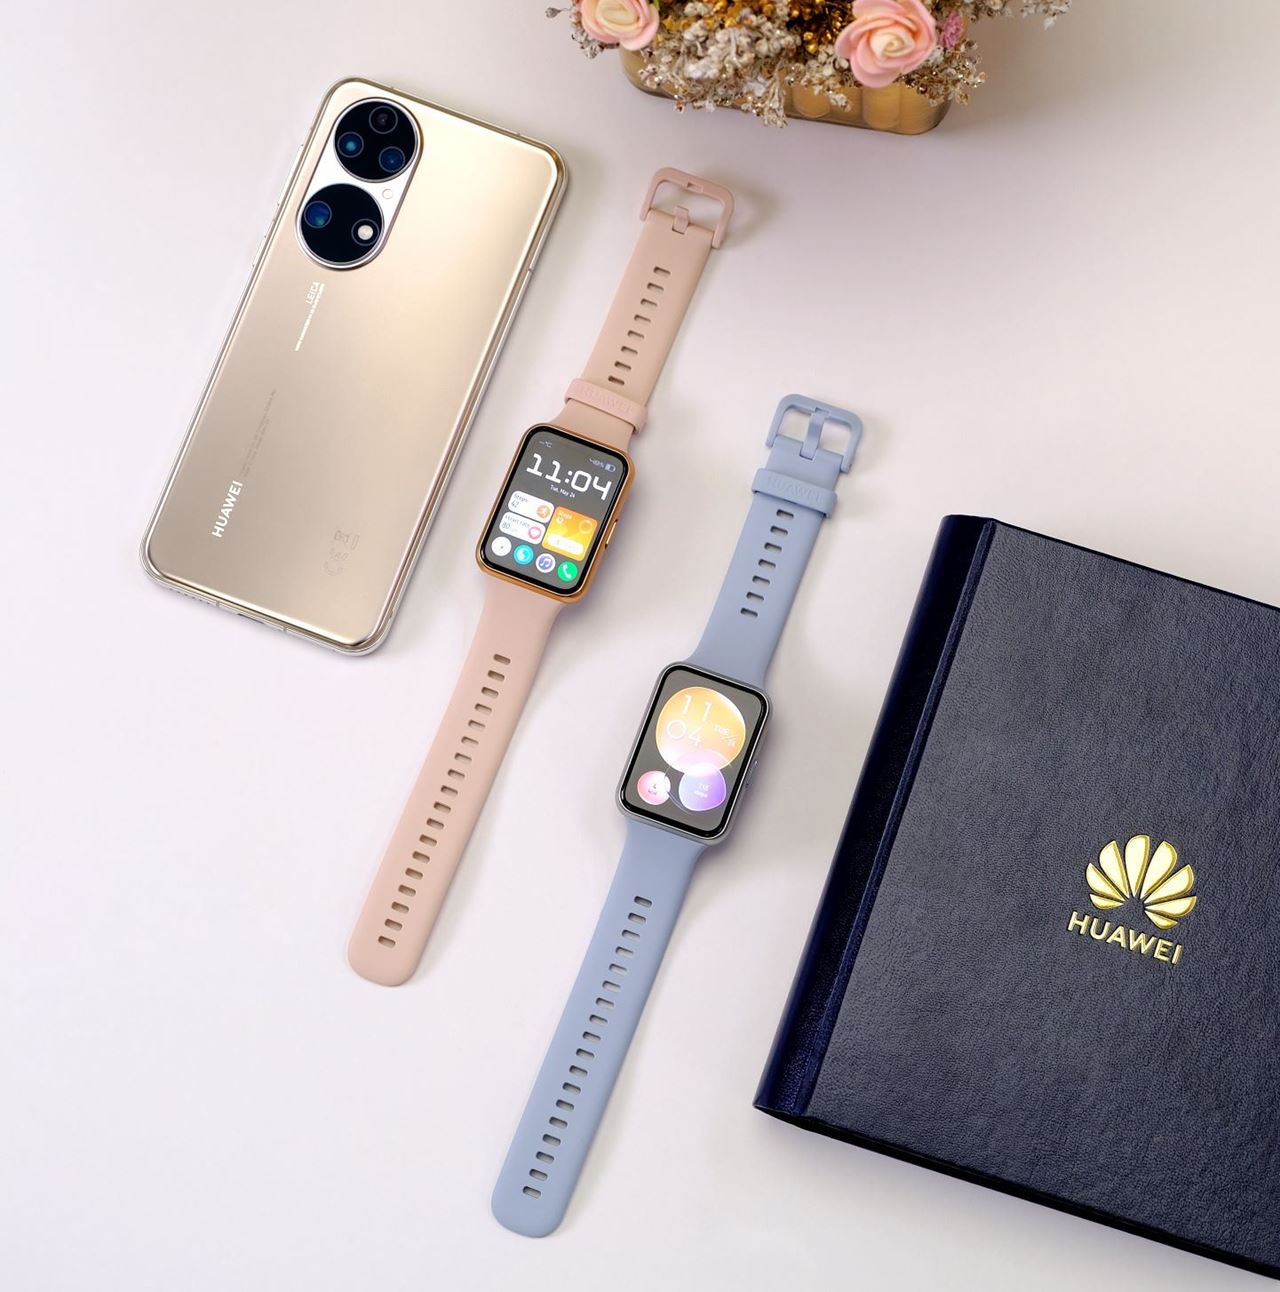 ساعة HUAWEI WATCH FIT 2 الجديدة تجمع بين التقنيات المتطورة ولمسات الموضة العصرية وإليكم أبرز مزاياها